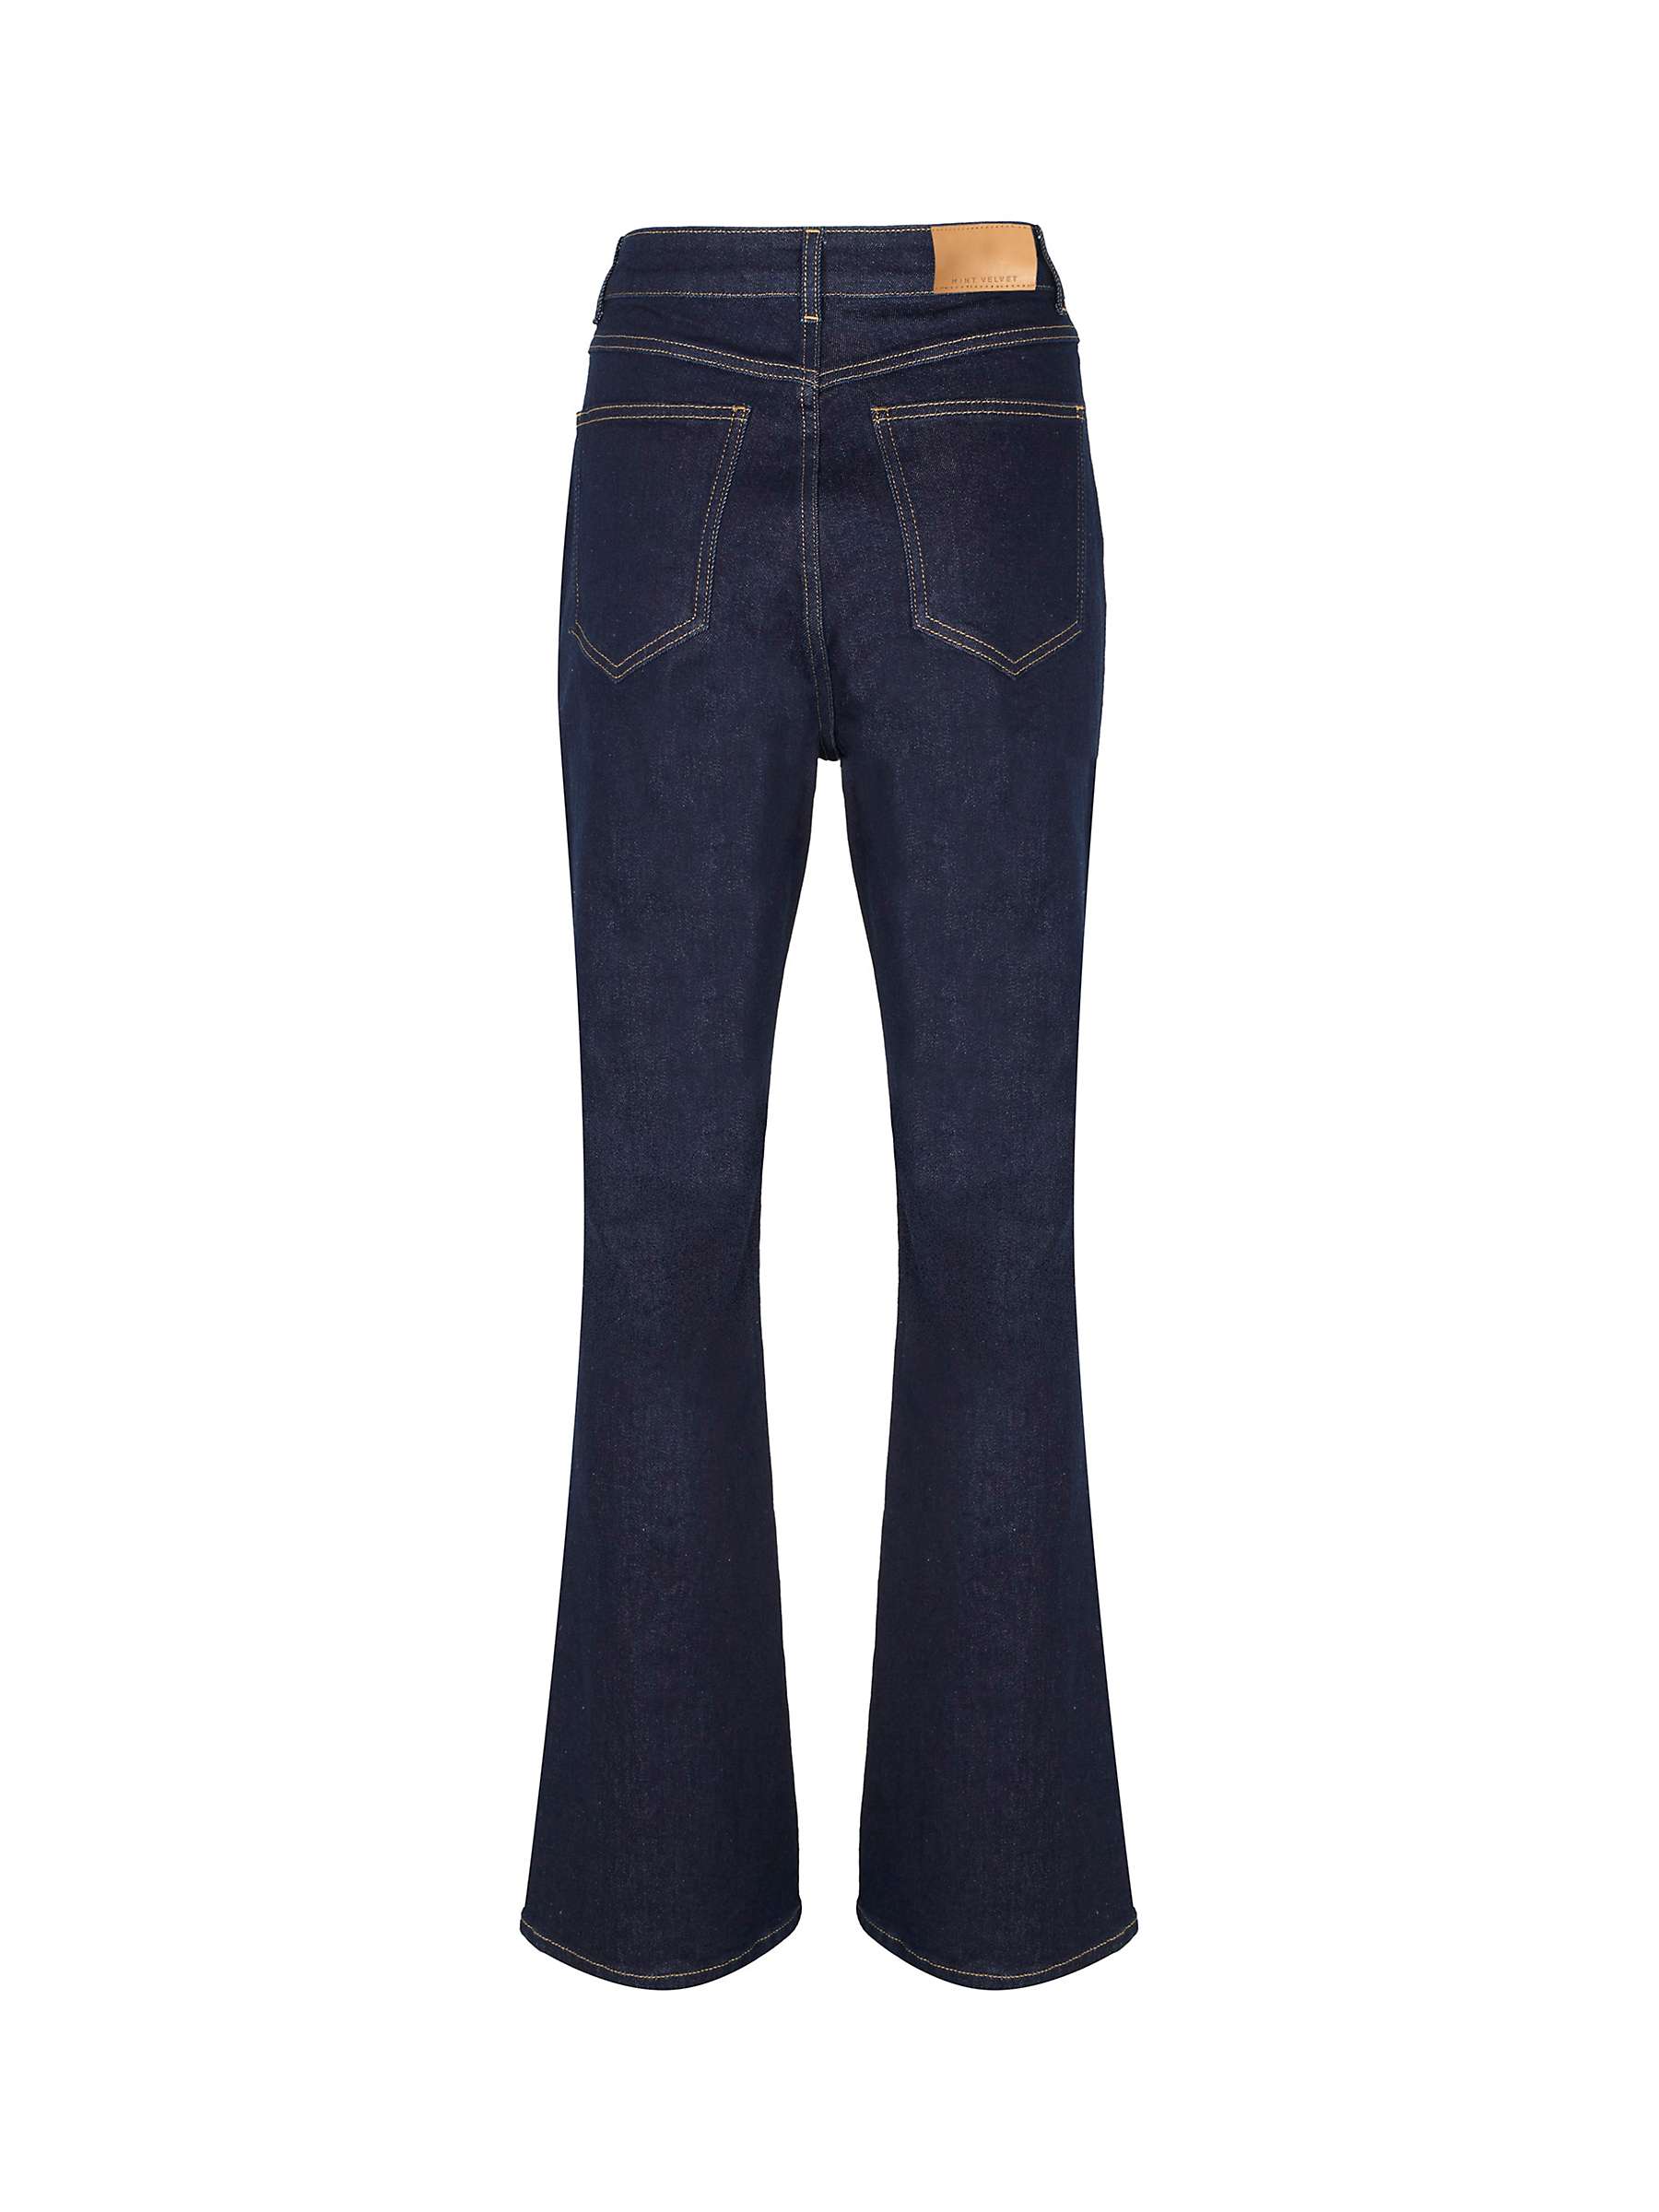 Buy Mint Velvet High Waist Flared Jeans, Dark Blue Online at johnlewis.com